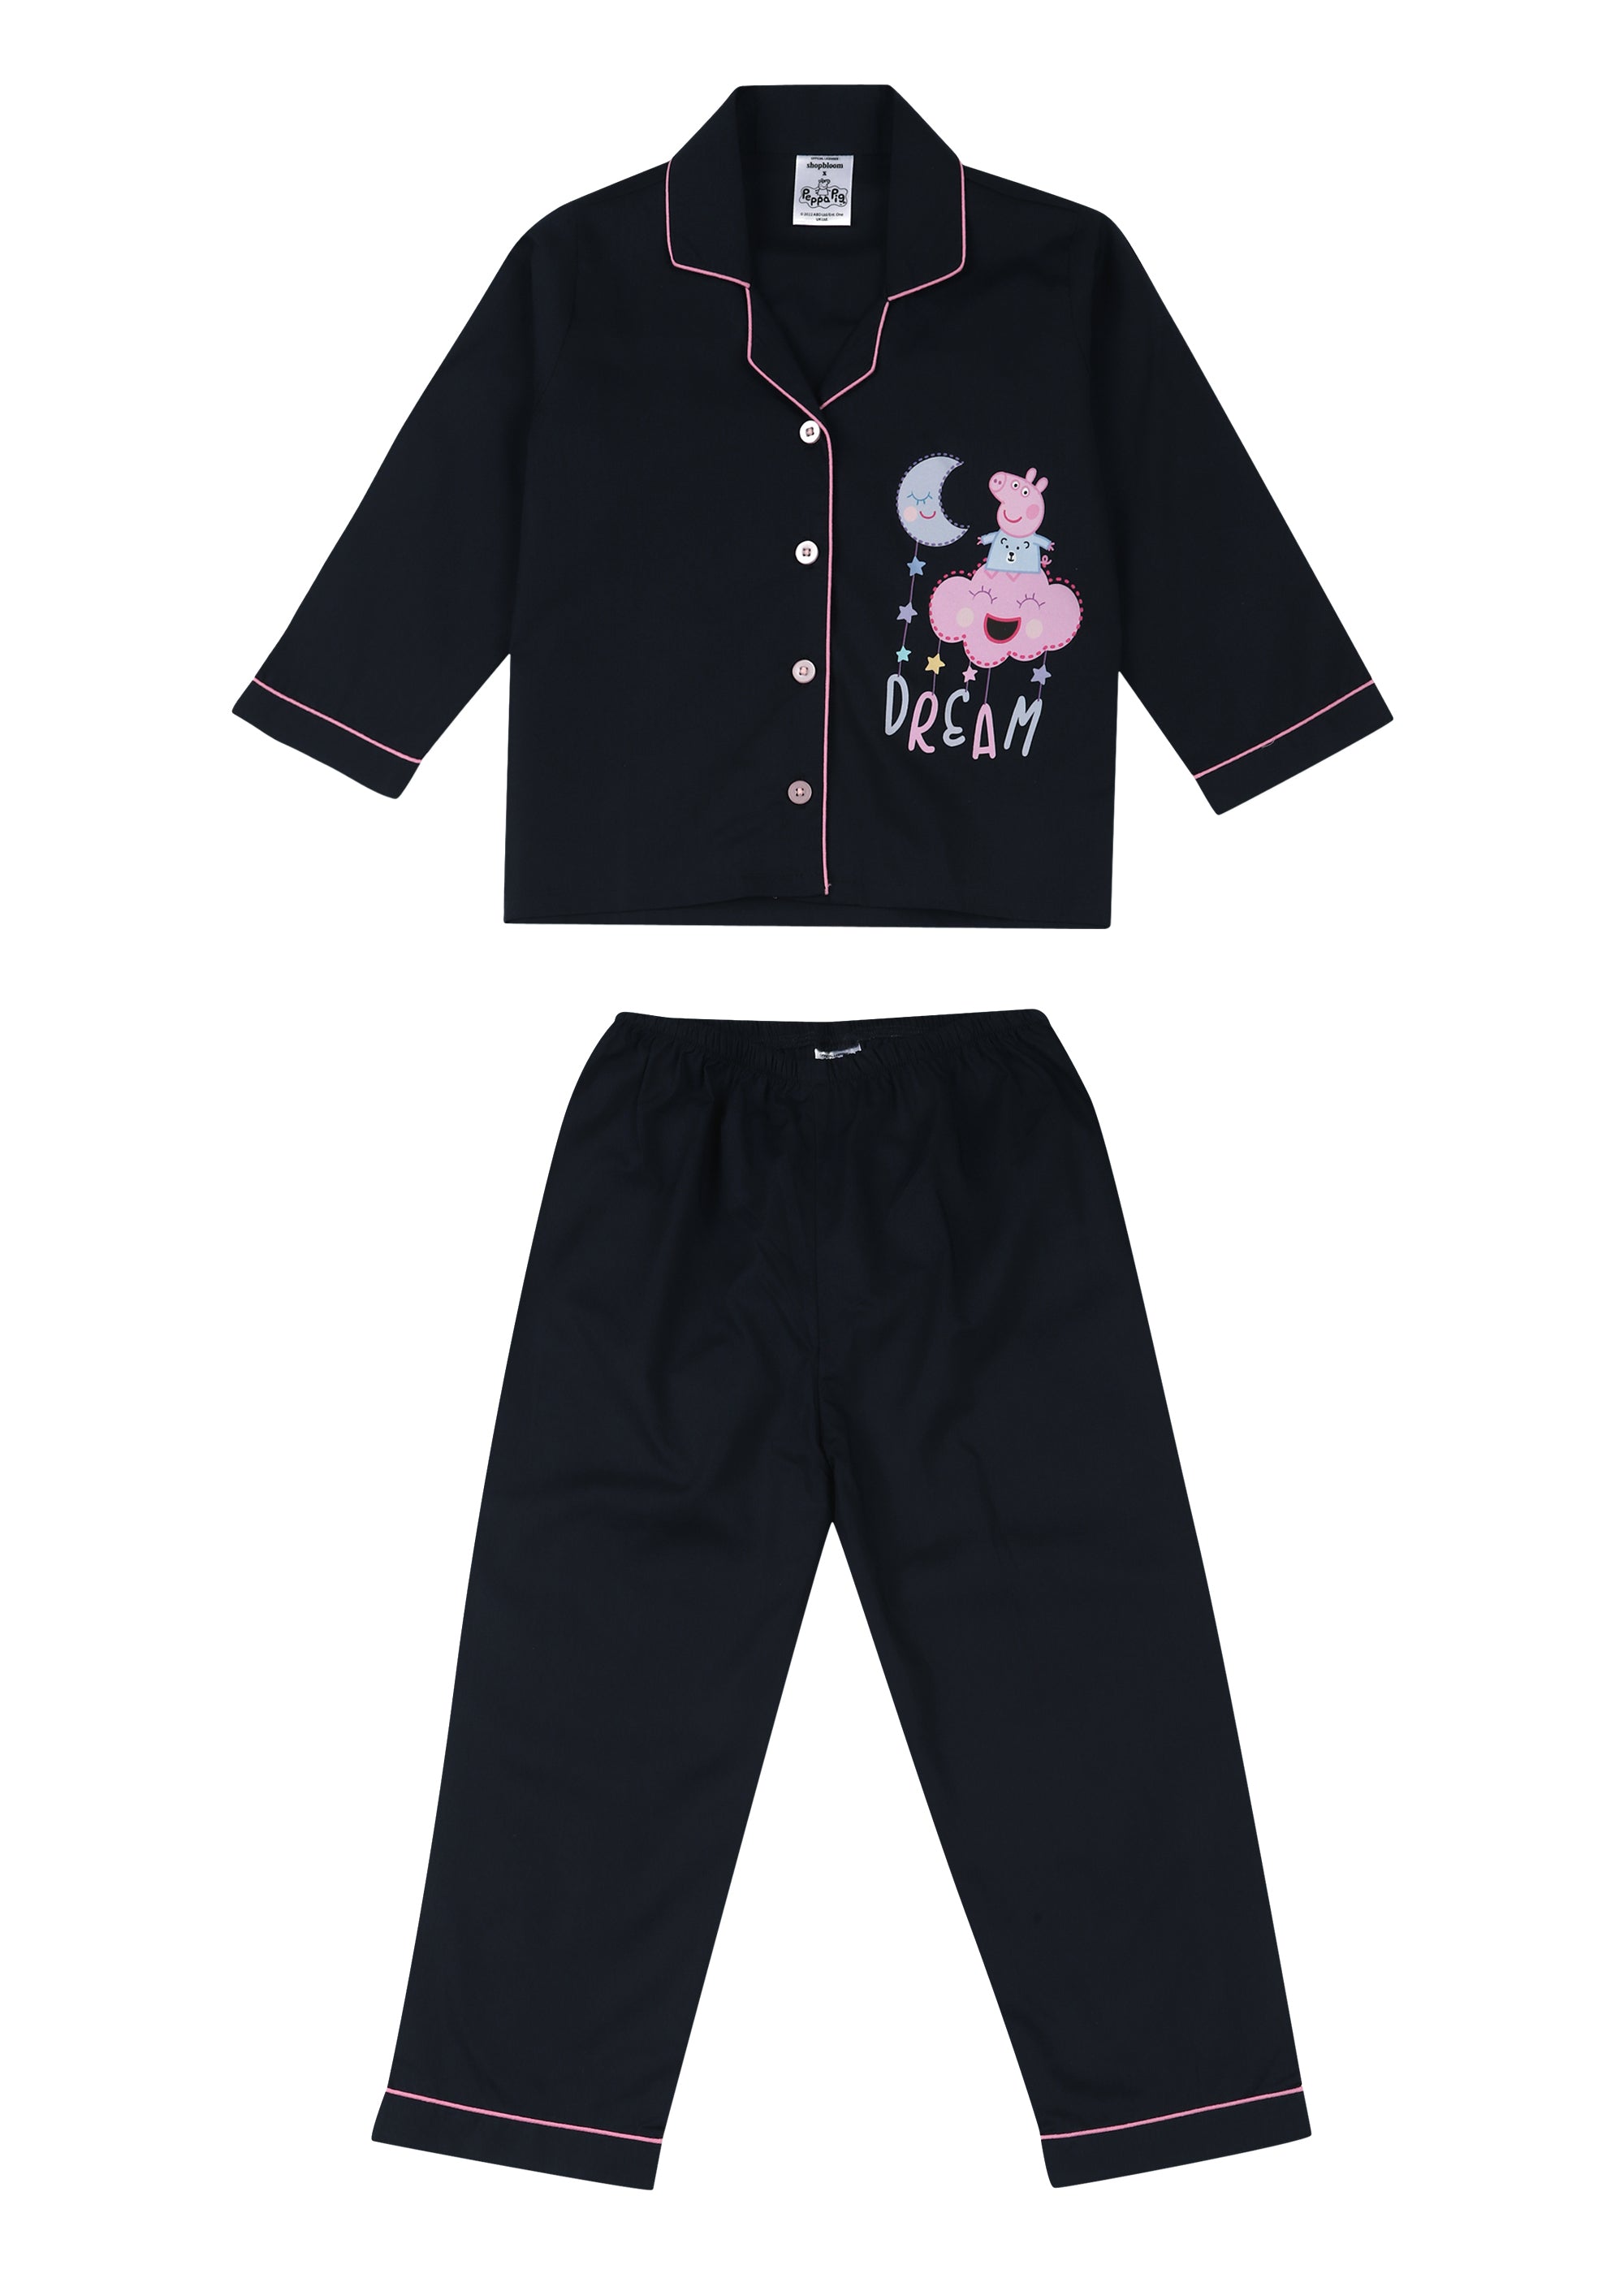 Peppa Pig Dream Print Long Sleeve Kids Night Suit - Shopbloom